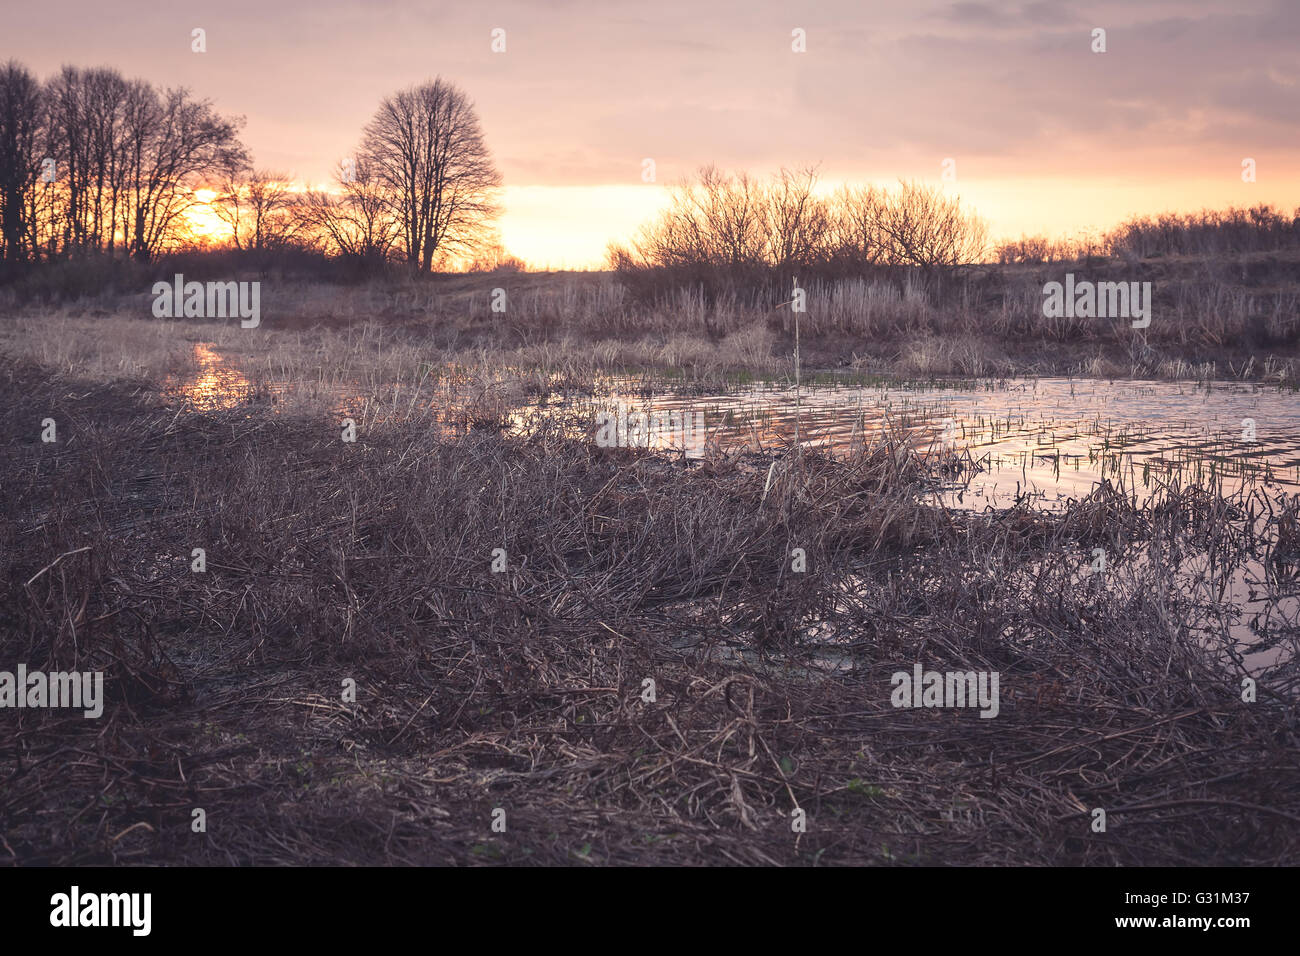 Pintoresco paisaje rural durante la puesta de sol en el campo río cercano con el reflejo del sol sobre la superficie del agua Foto de stock